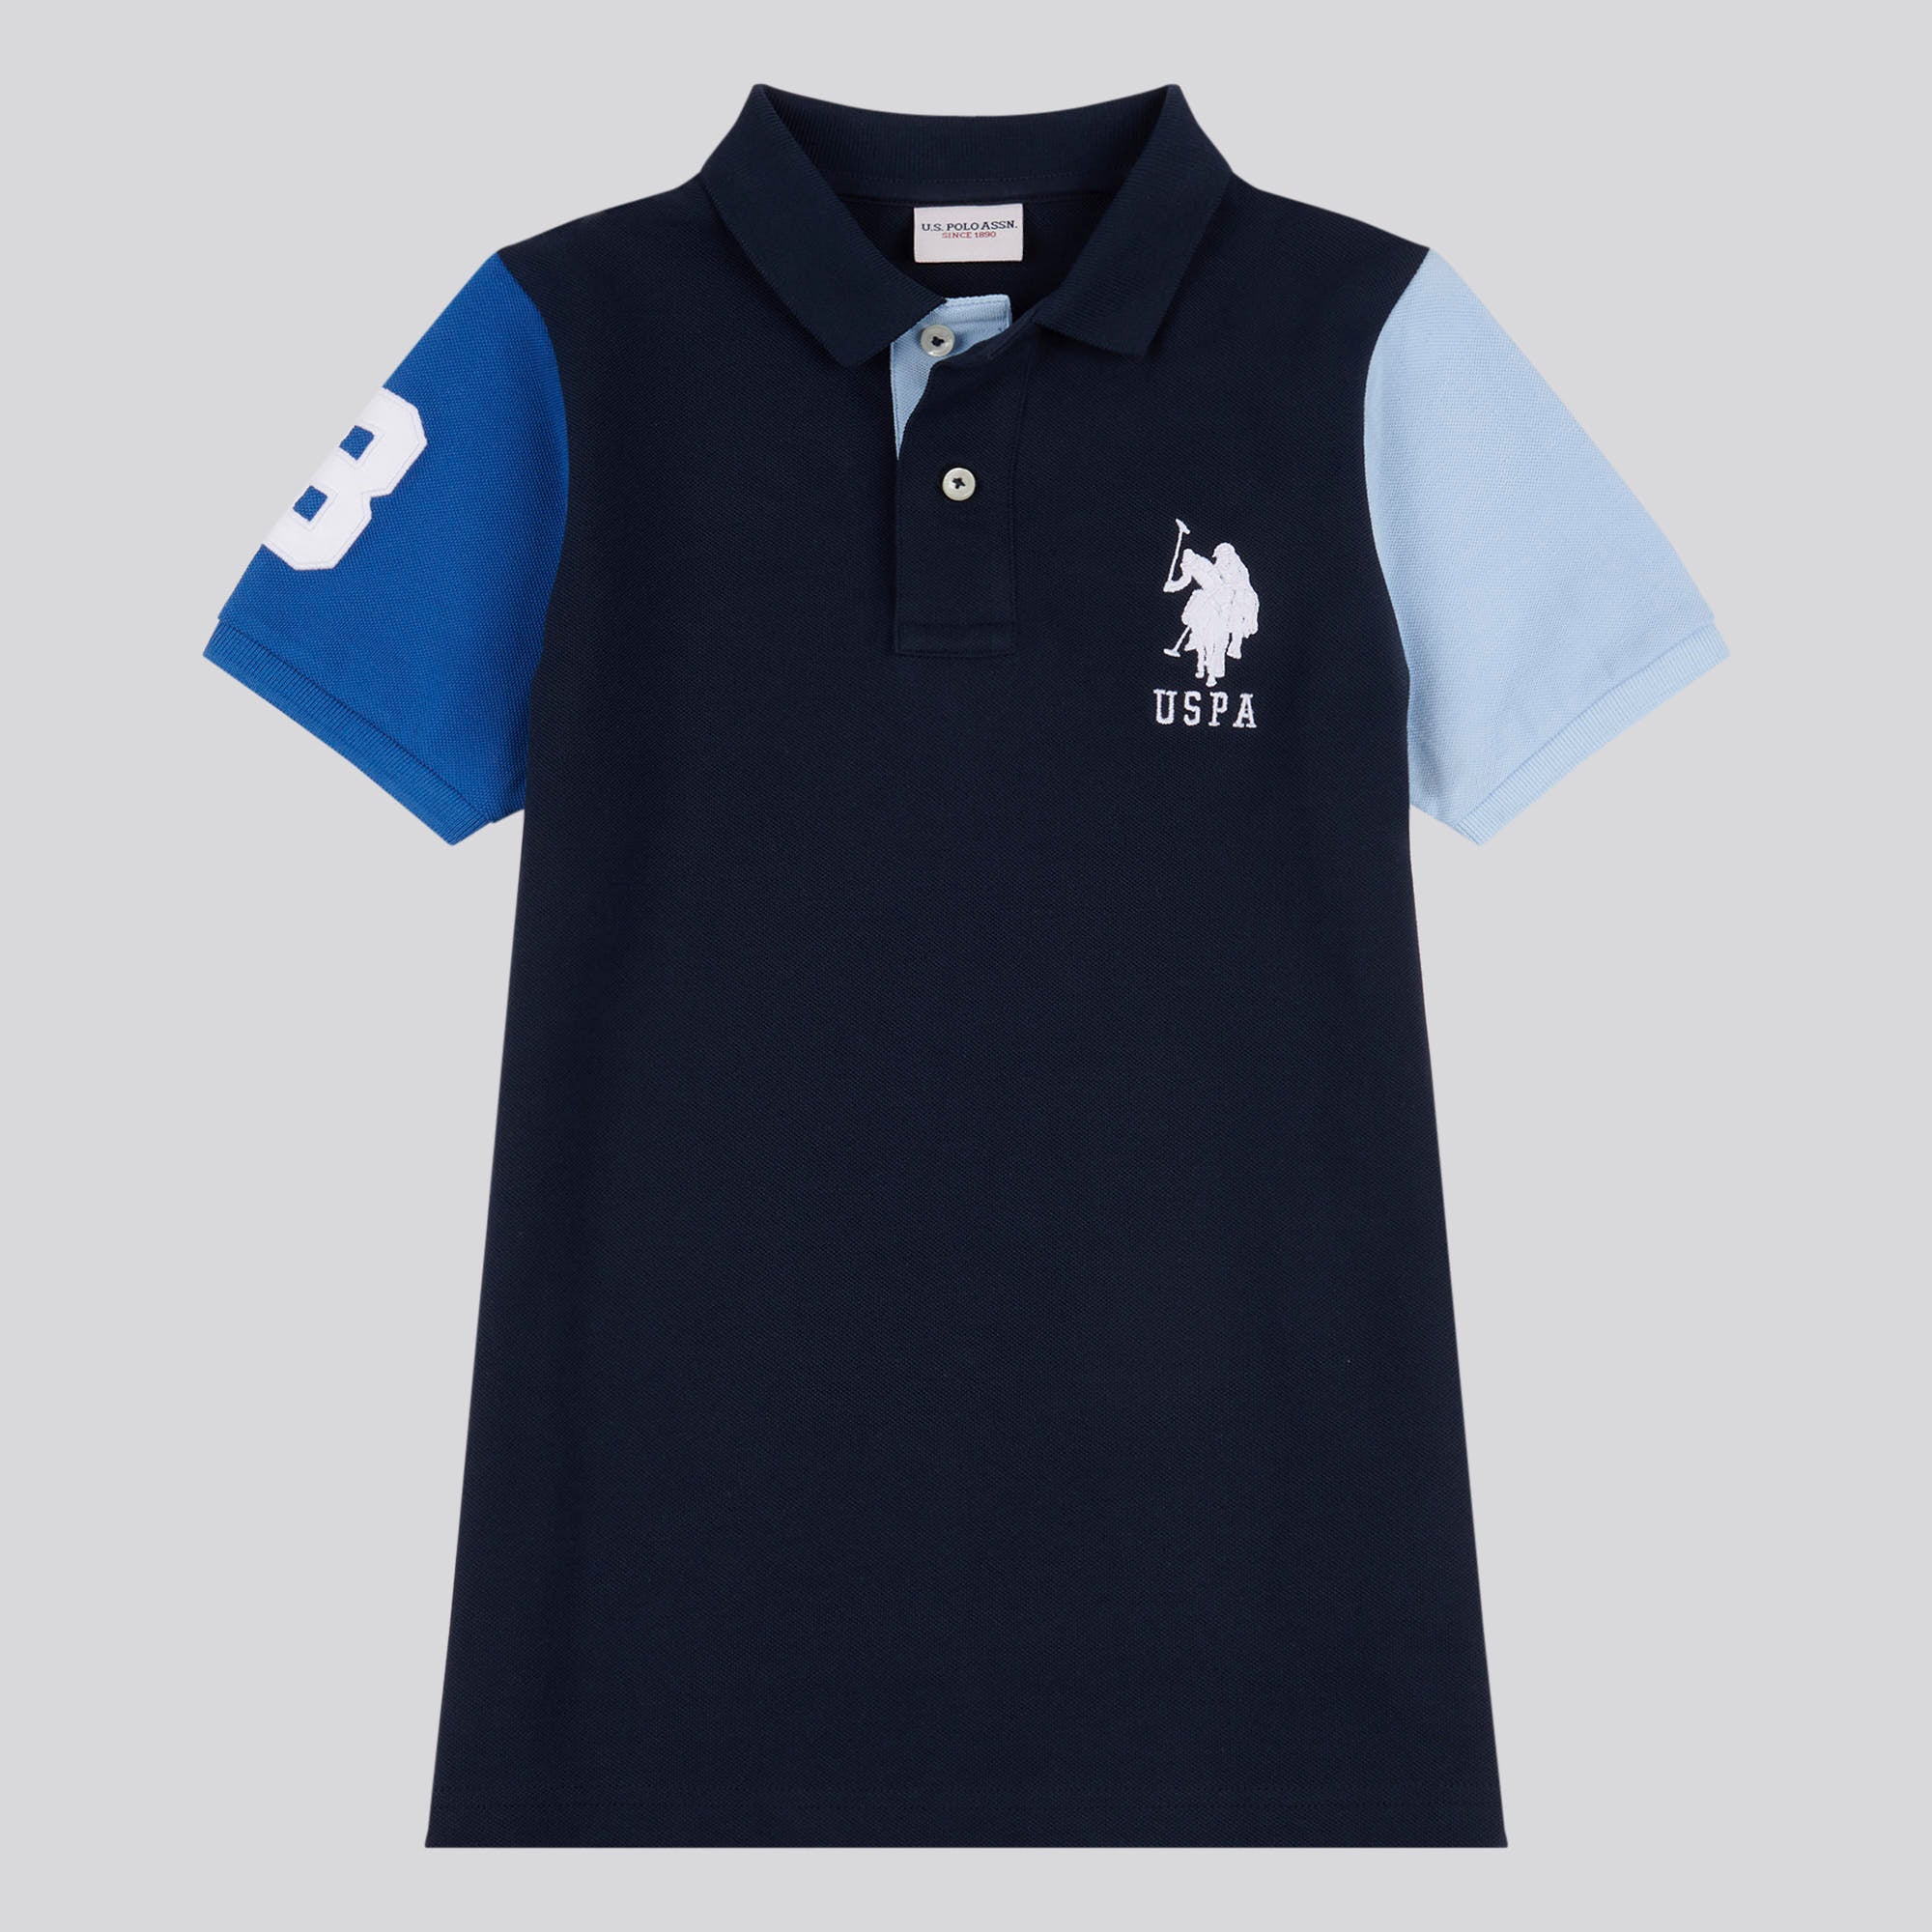 Boys Player 3 Colourblock Polo Shirt in Dark Sapphire Navy